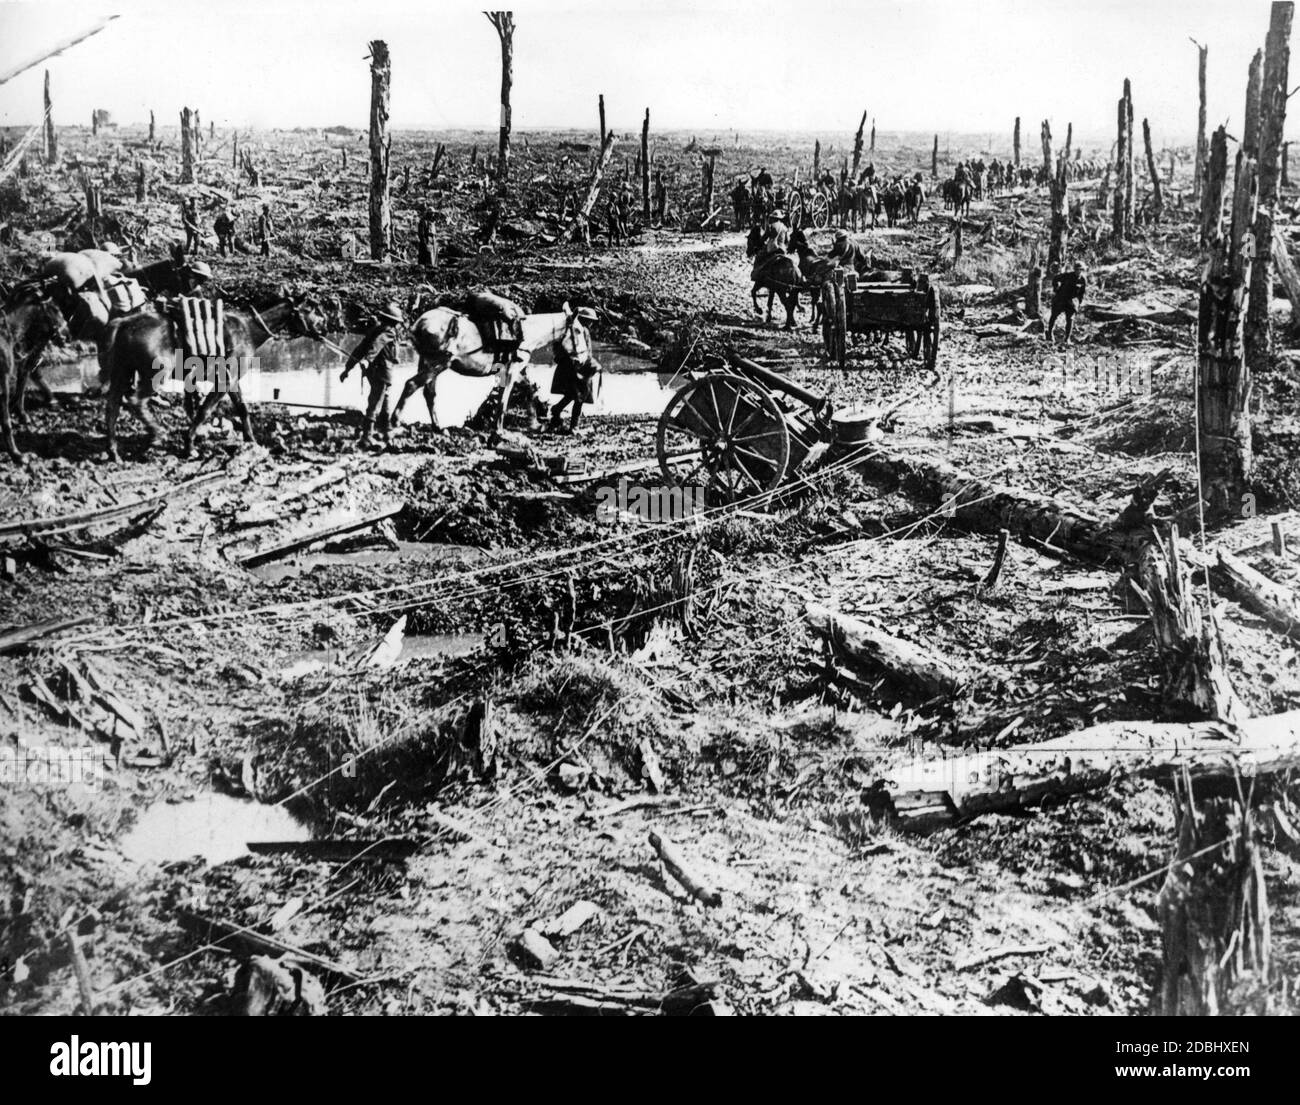 Erster Weltkrieg: Deutsche Soldaten auf dem Schlachtfeld Stockfoto